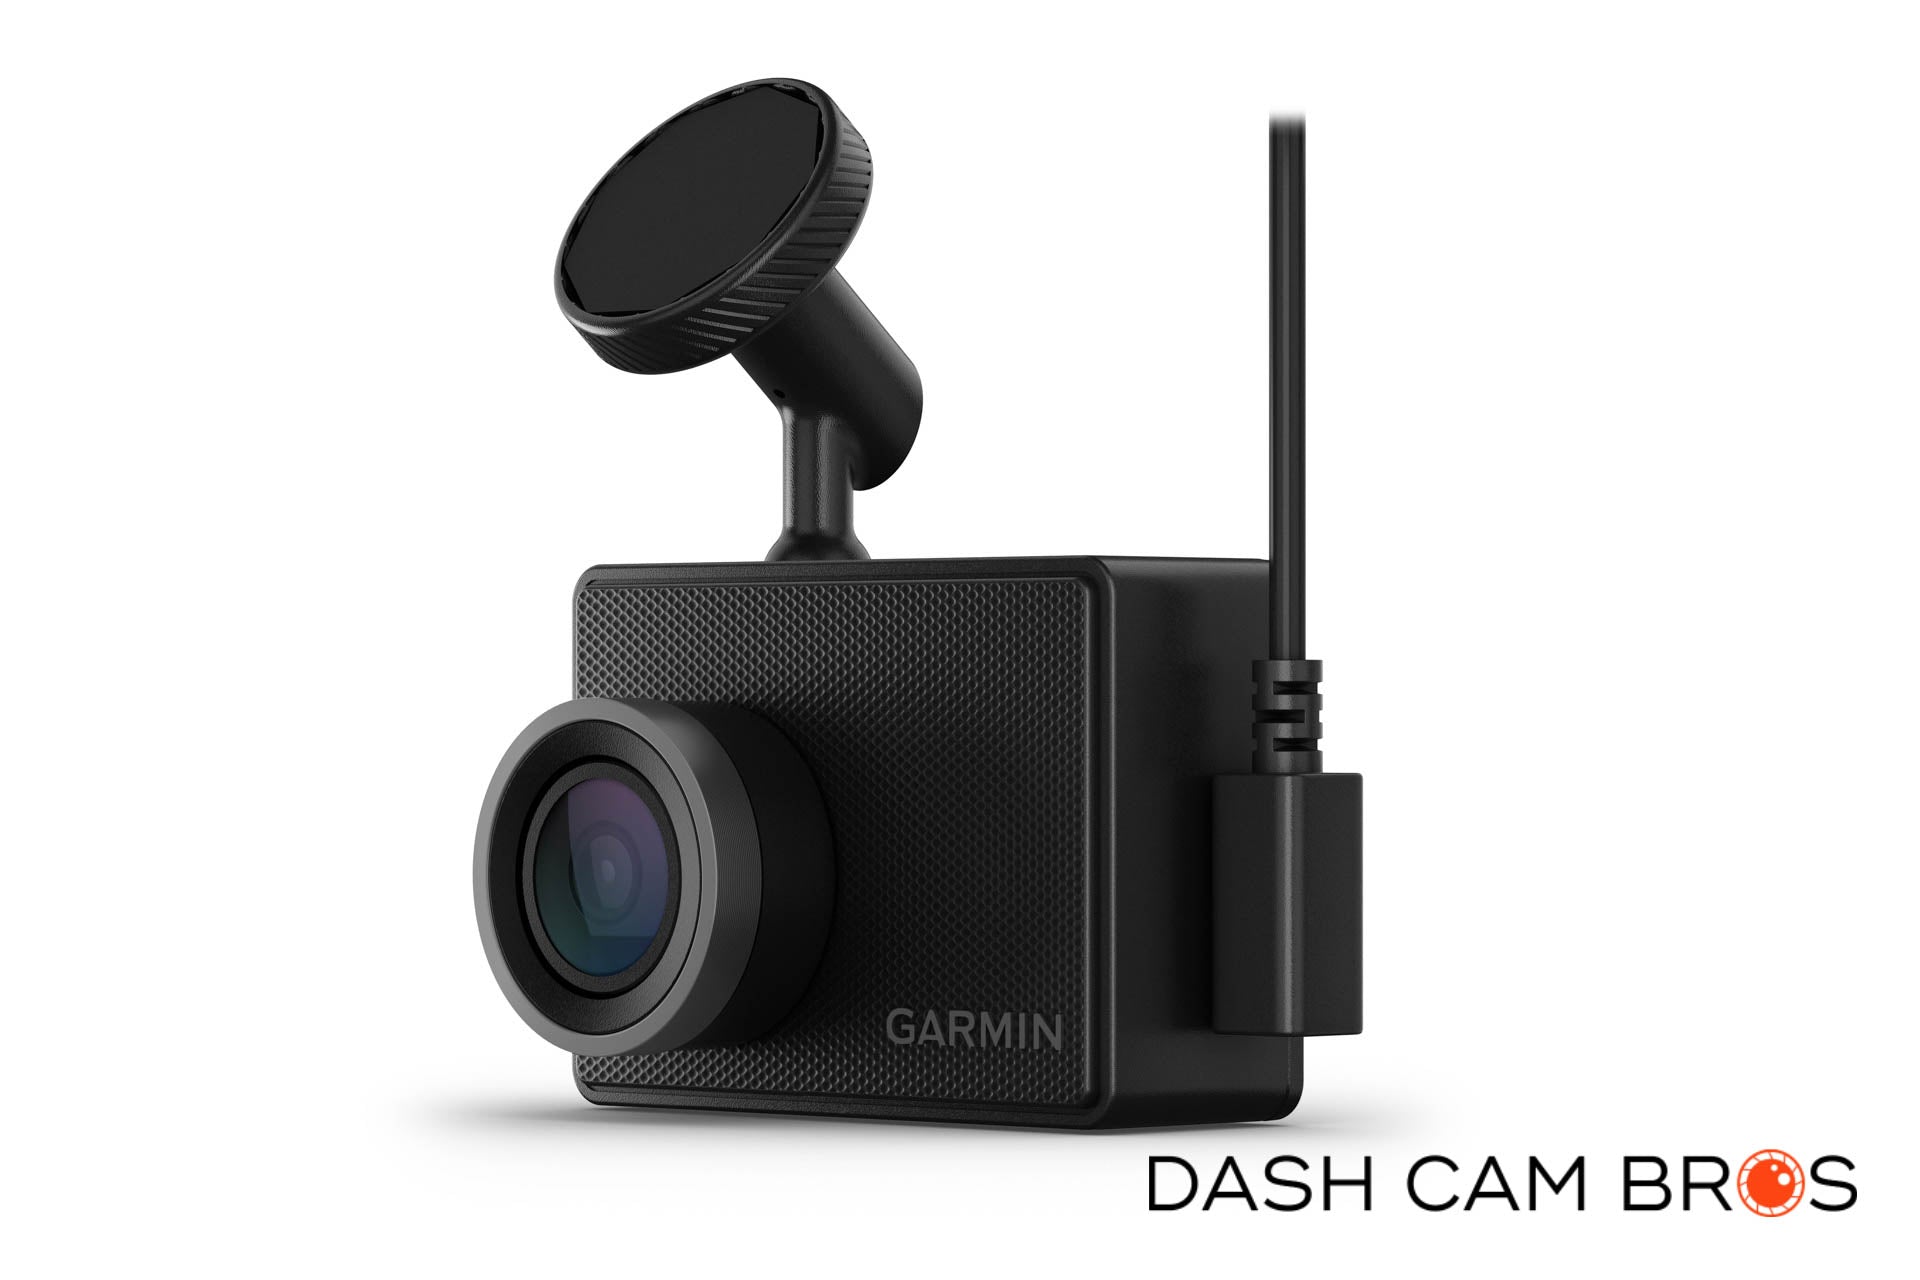 http://dashcambros.com/cdn/shop/products/dashcambros.com-garmin-dash-cam-47-3.jpg?v=1624030788